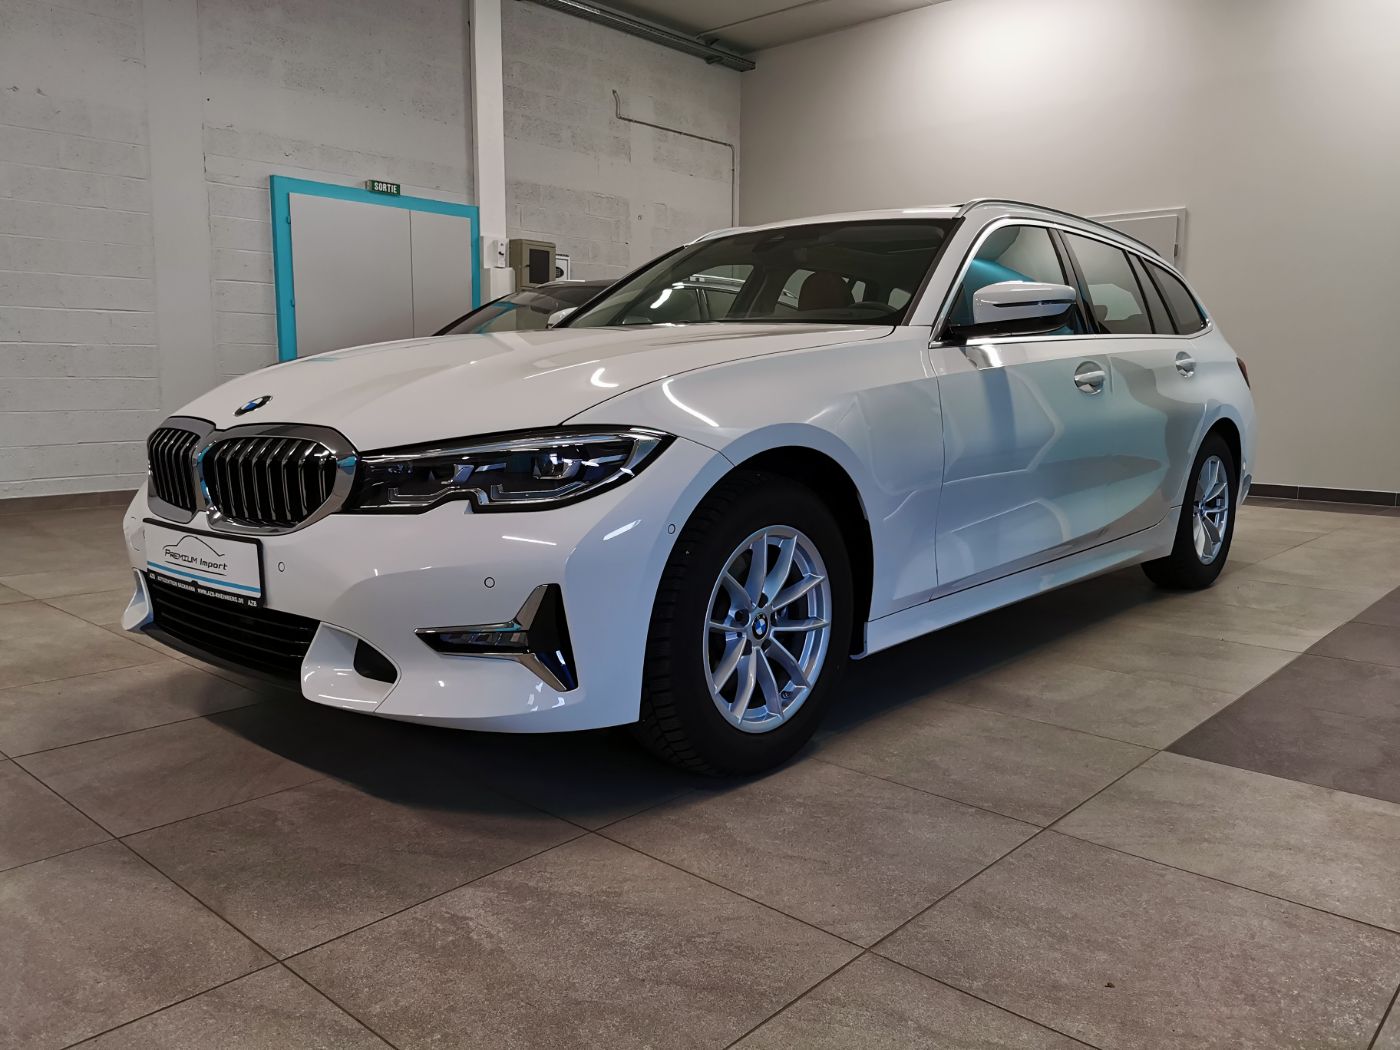 Lire la suite à propos de l’article BMW 320i Touring – Luxury